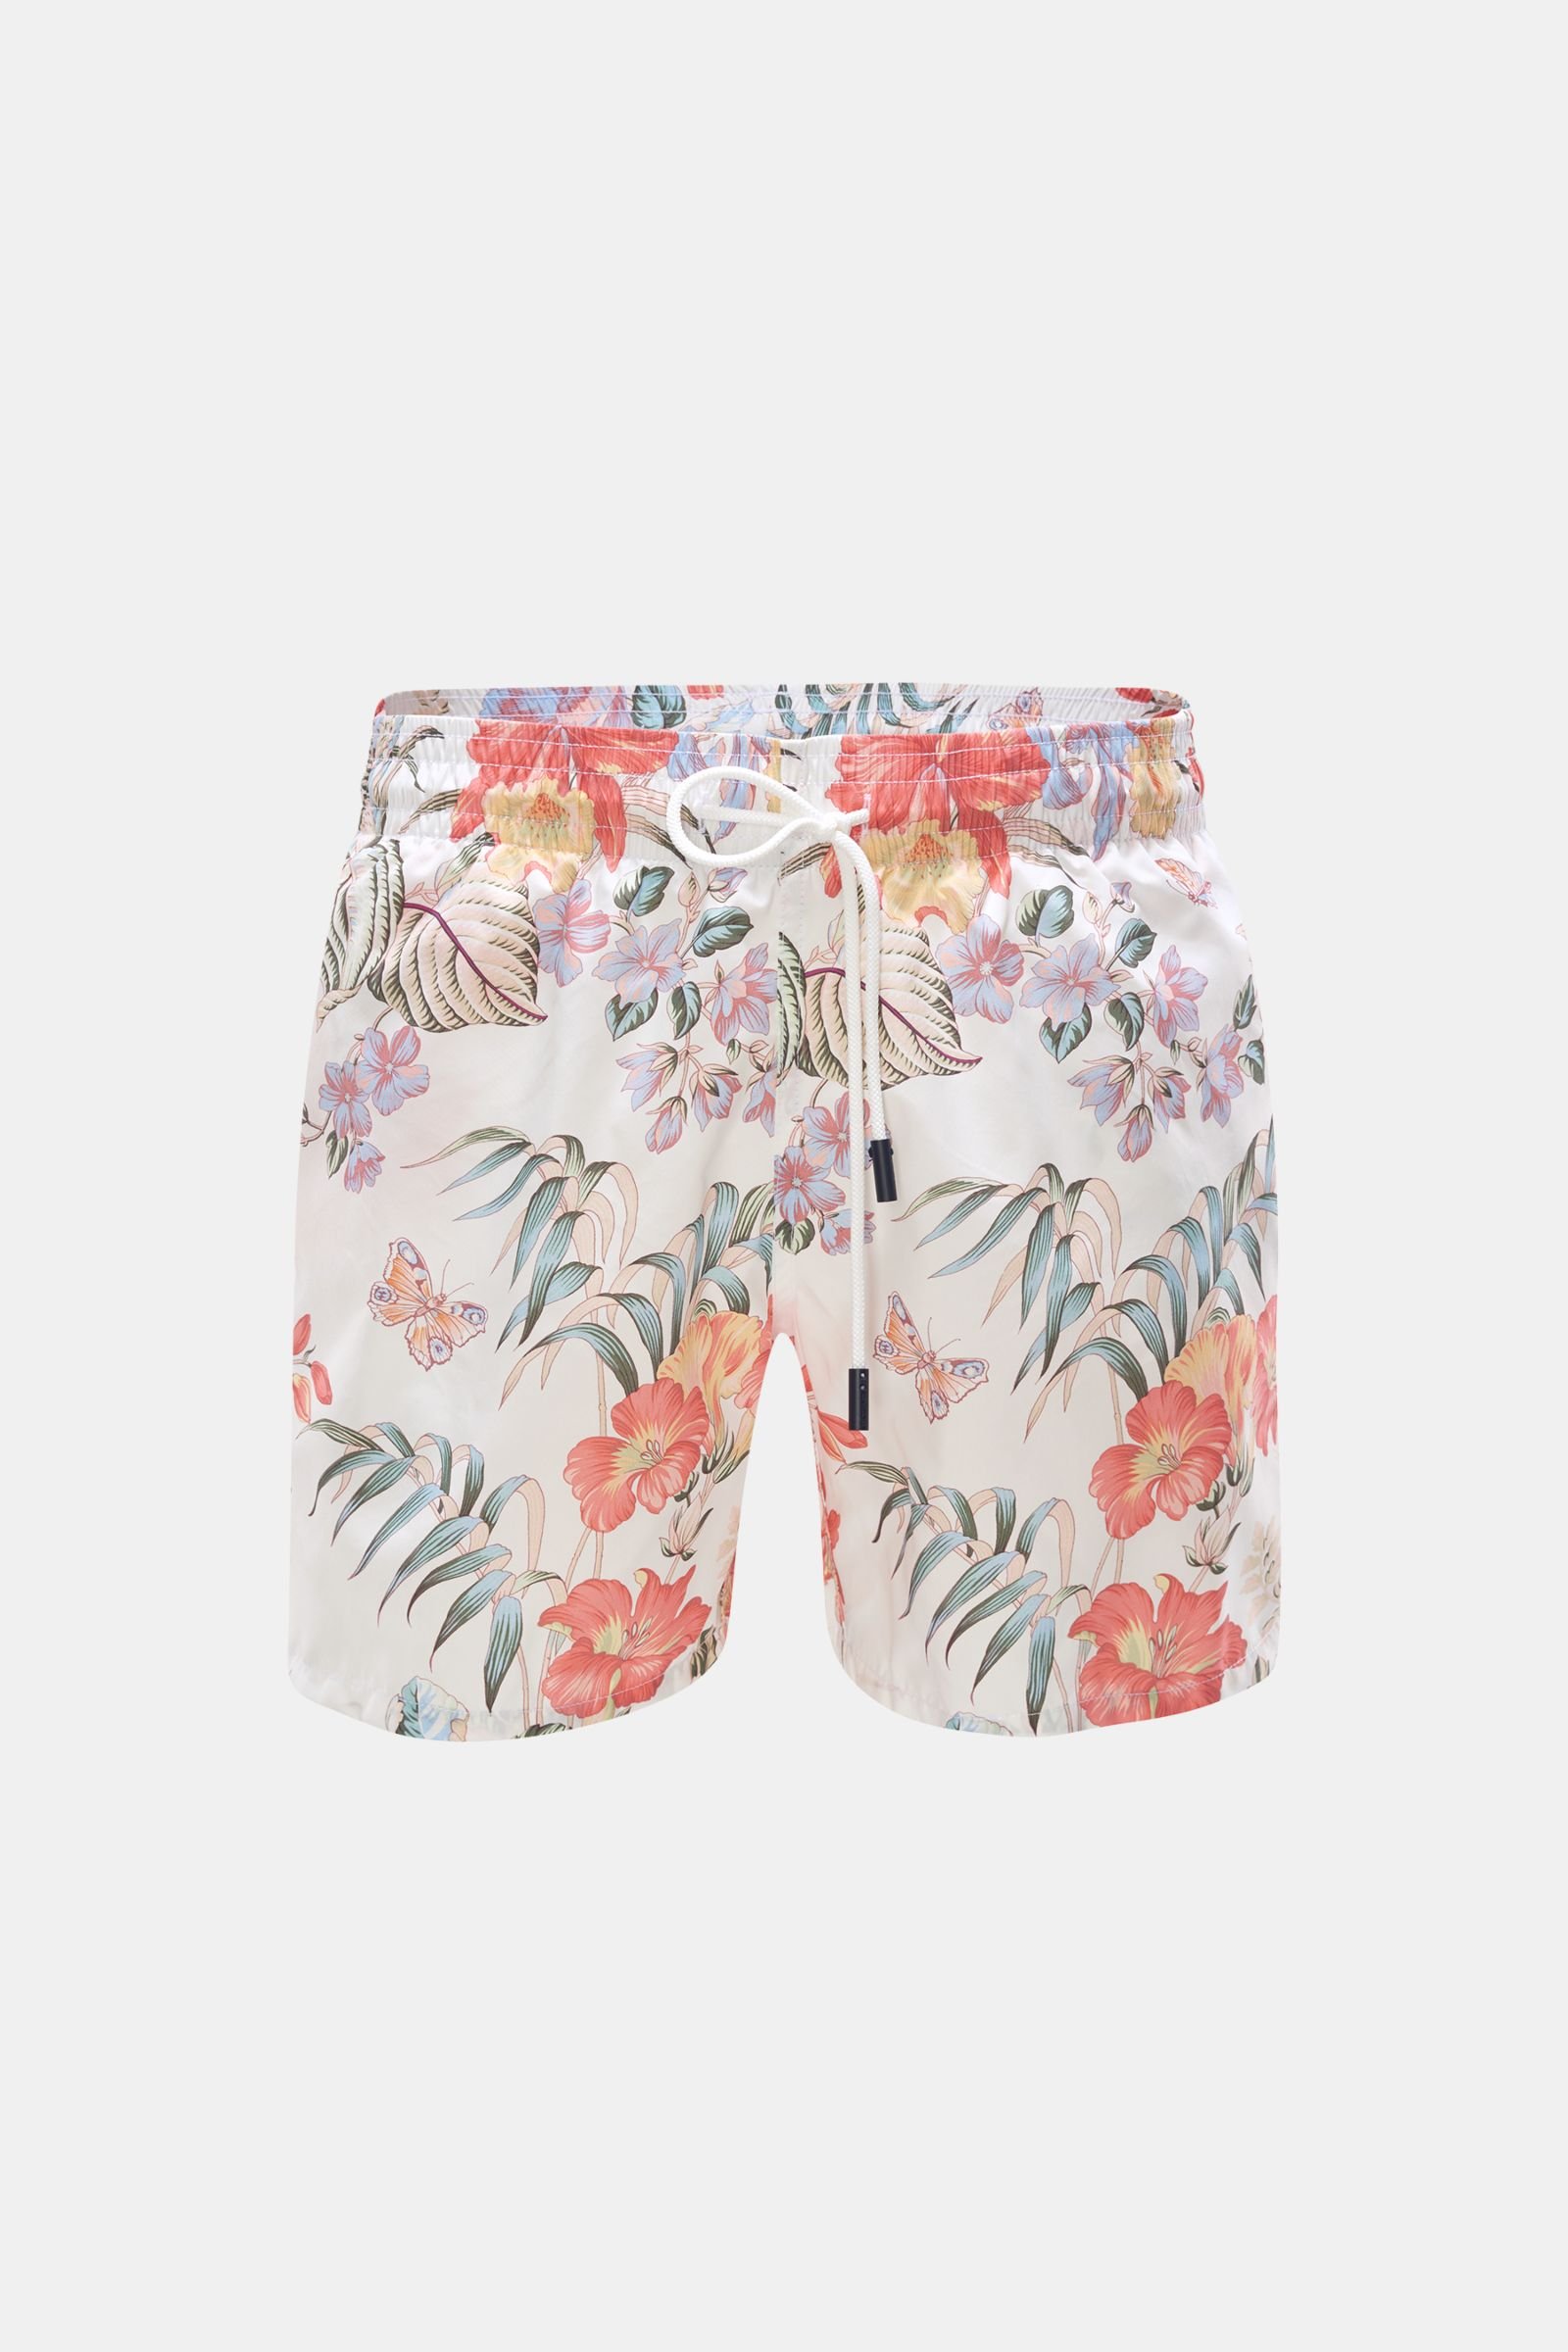 Swim shorts white patterned